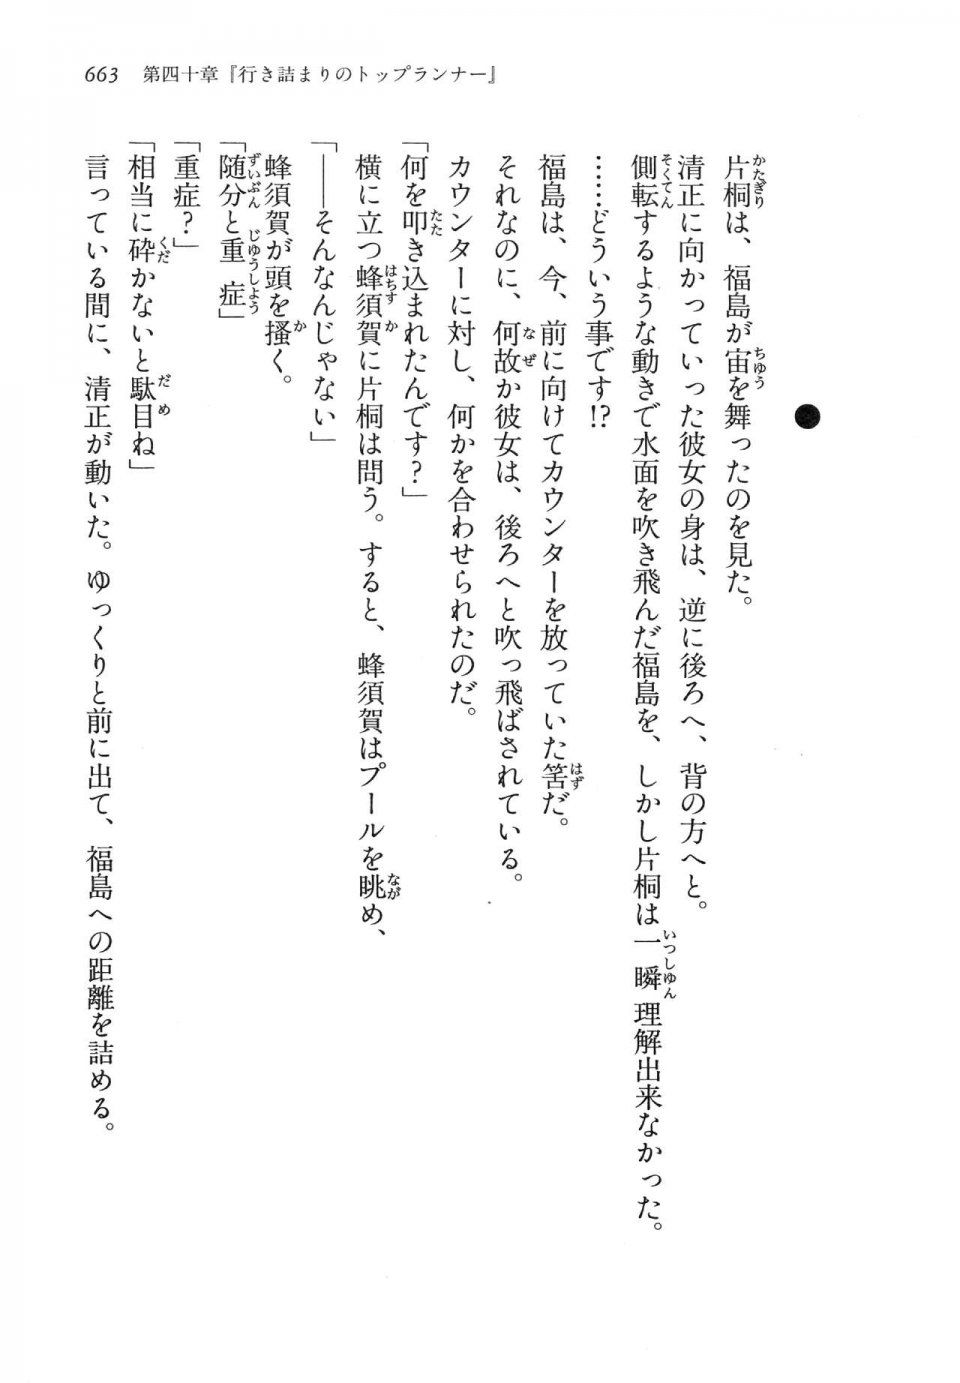 Kyoukai Senjou no Horizon LN Vol 14(6B) - Photo #663